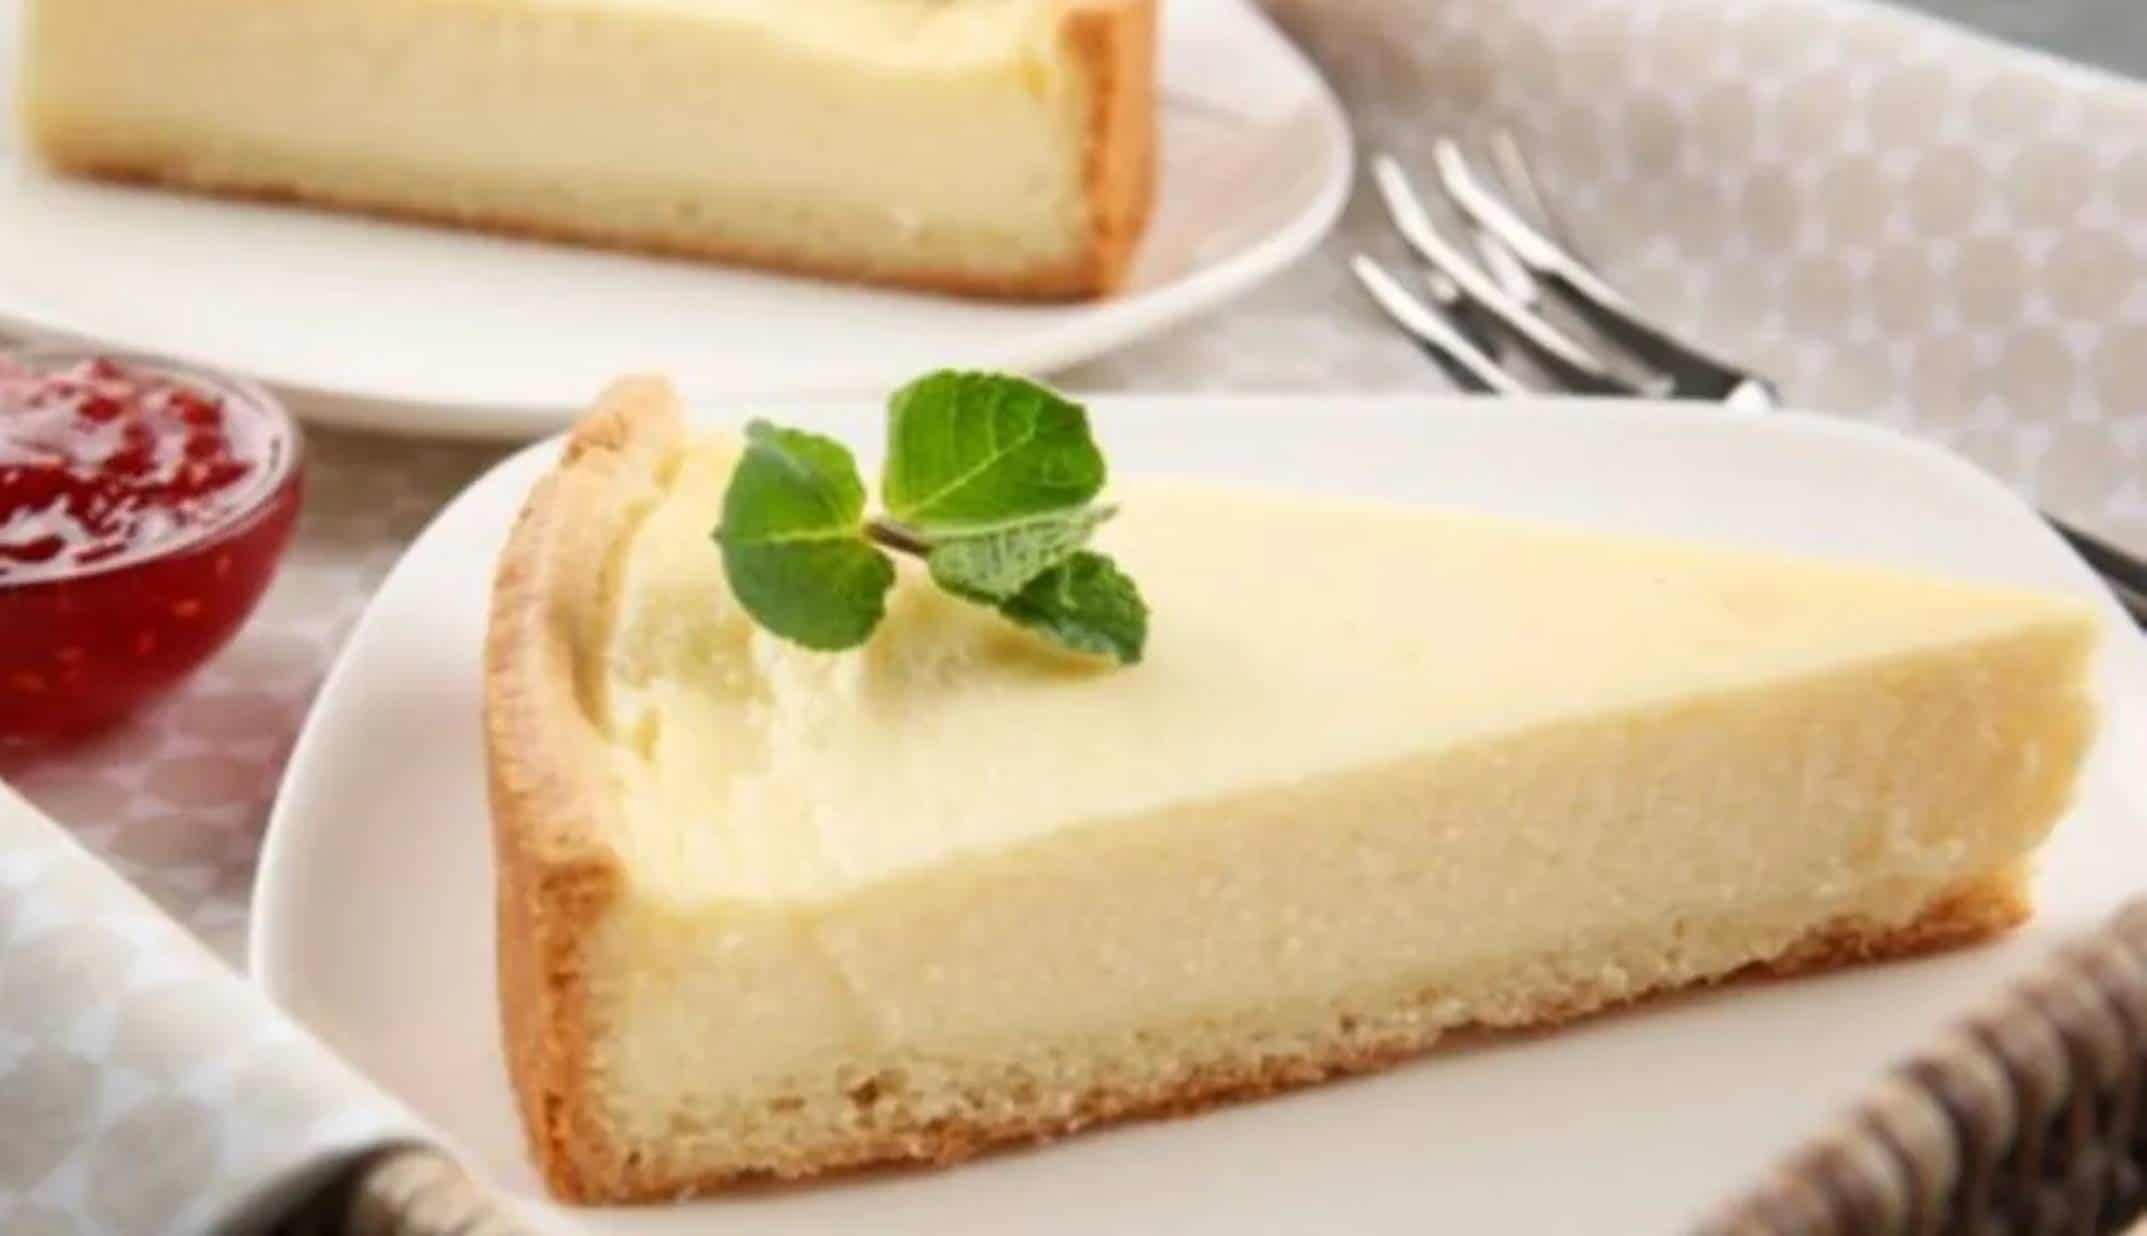 Cremoso e super fácil: Aprenda a fazer este cheesecake delicioso